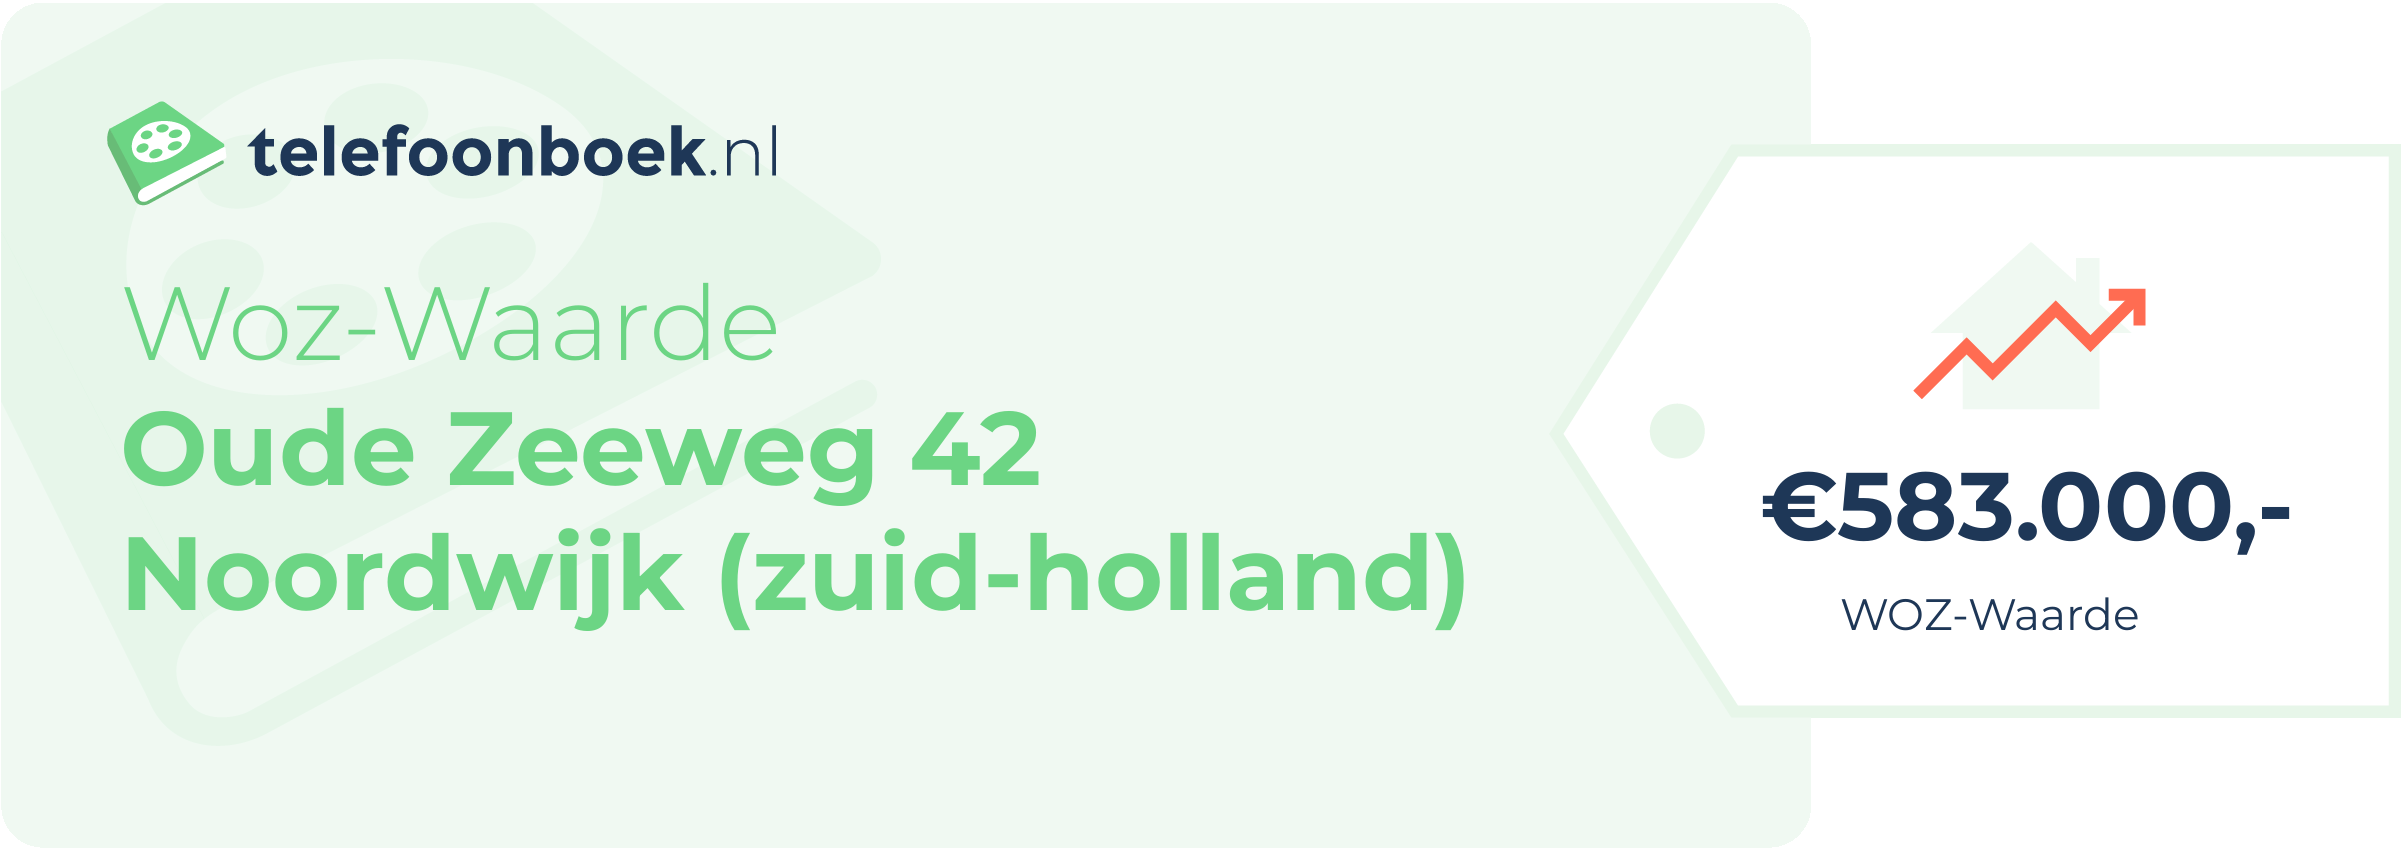 WOZ-waarde Oude Zeeweg 42 Noordwijk (Zuid-Holland)